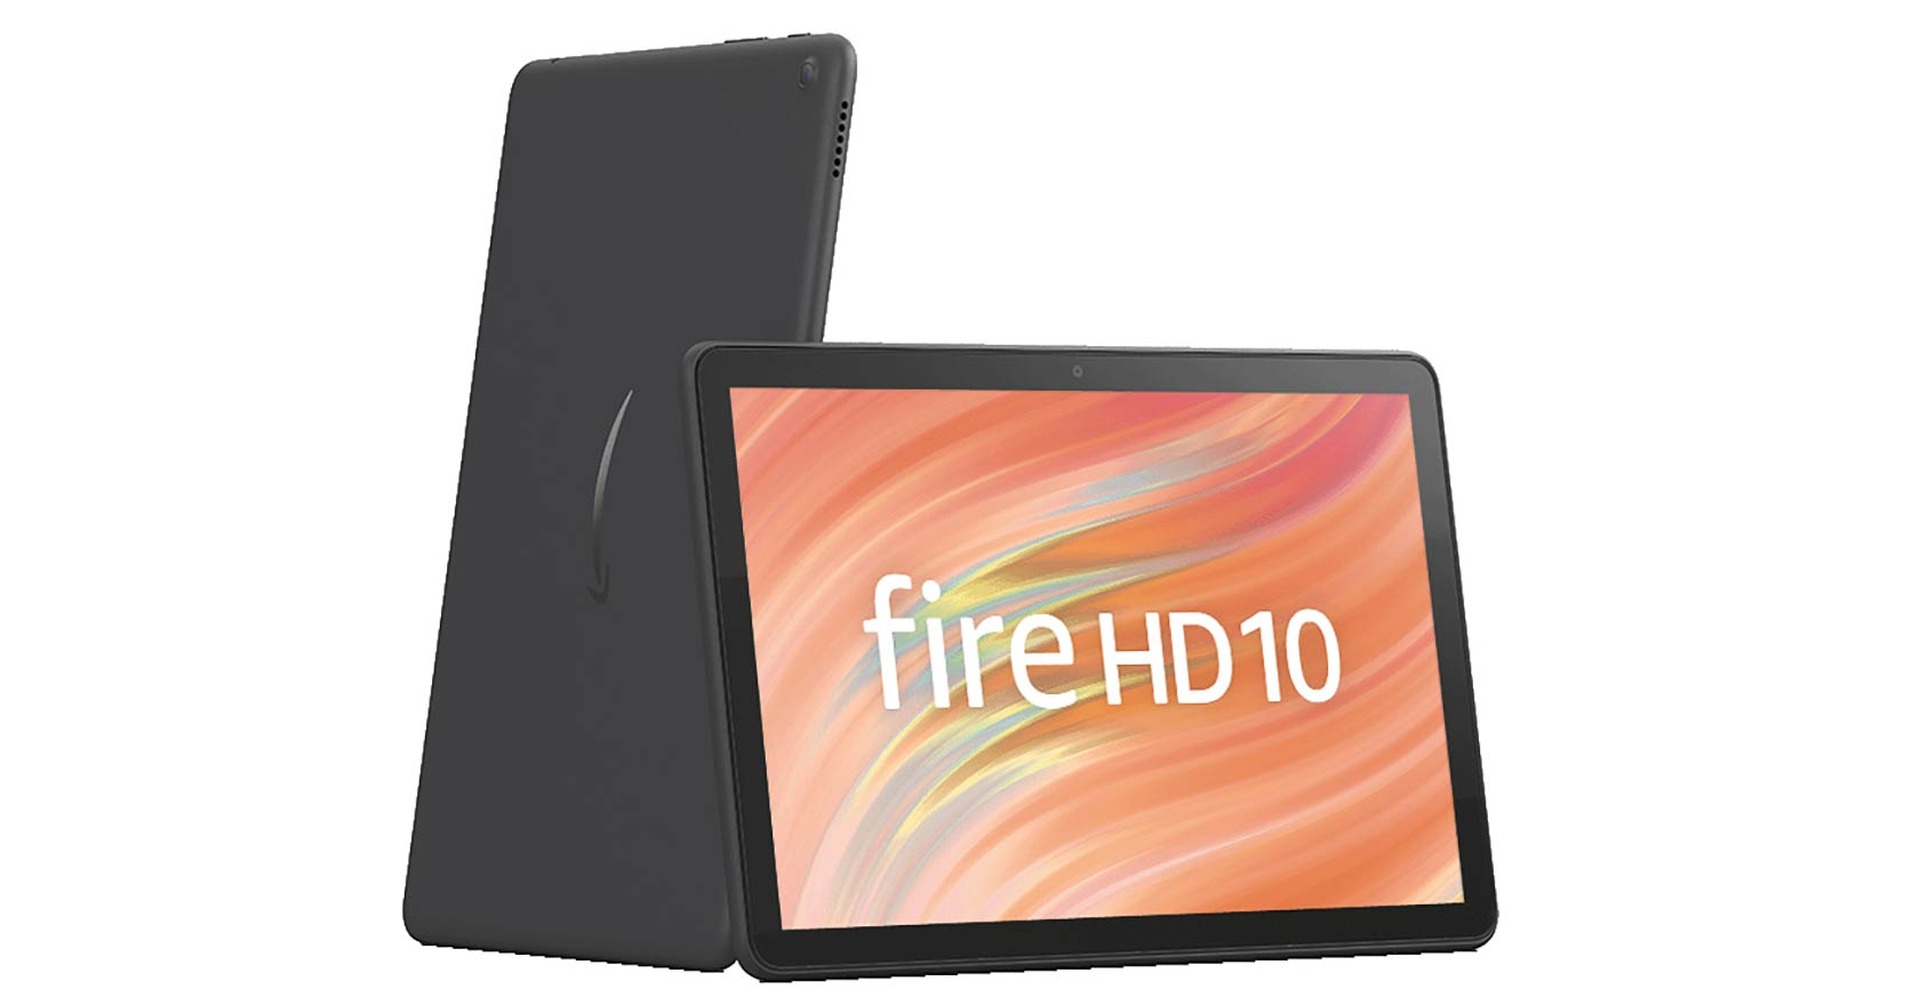 Fire HD 10 タブレット 10.1インチHDディスプレイ 32GB